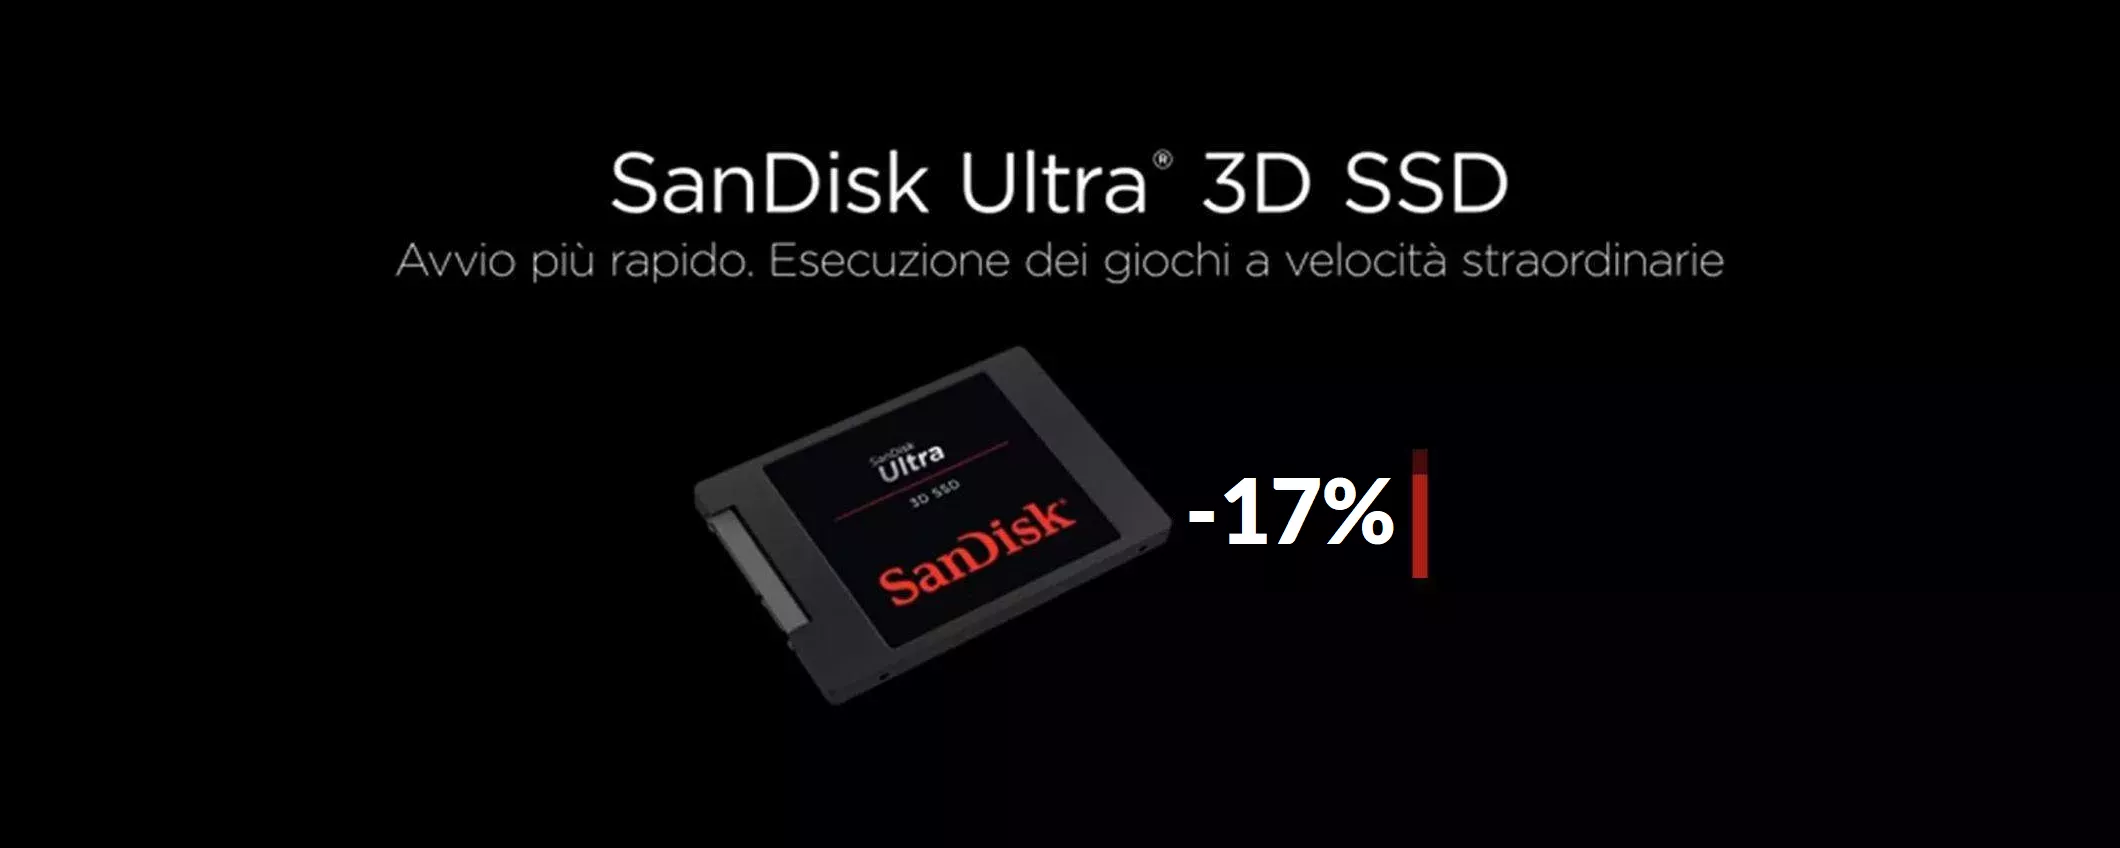 SSD SanDisk 2TB: il prezzo scende vertiginosamente sotto i 200€